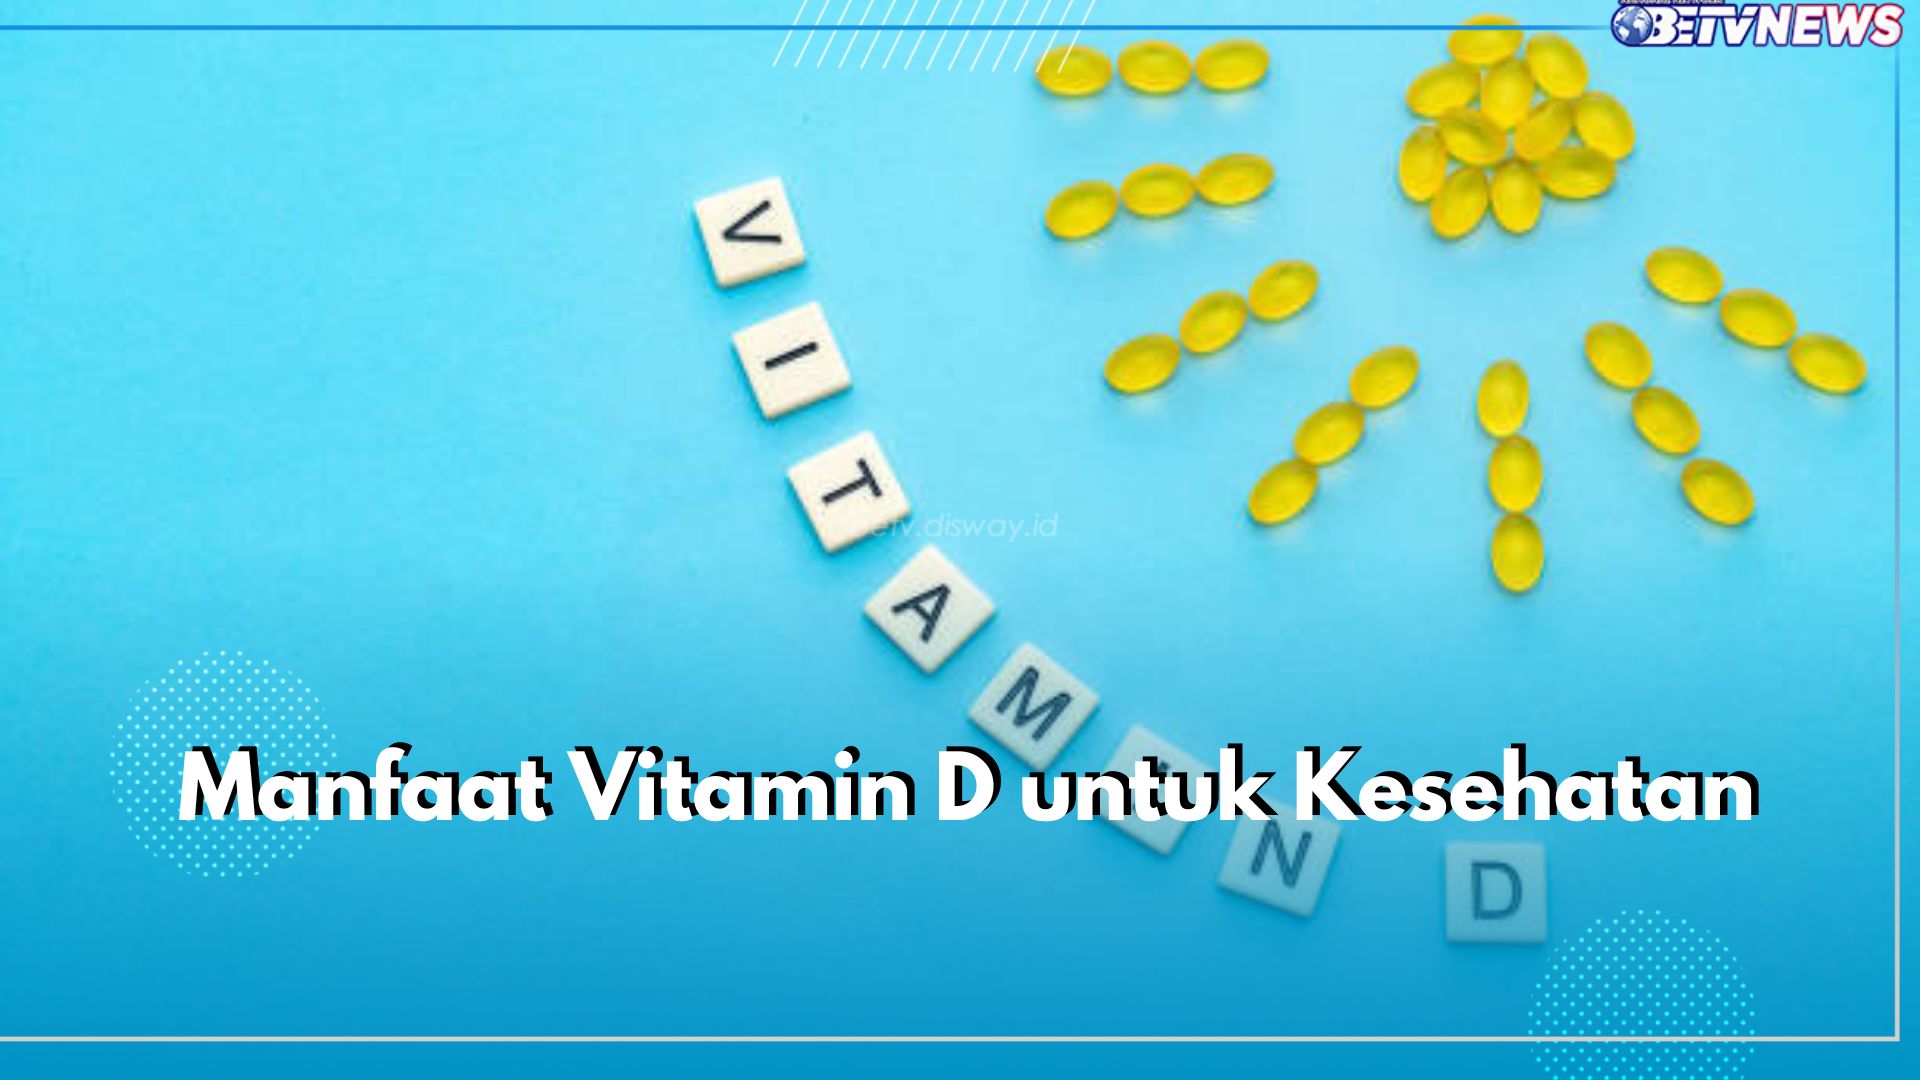 7 Manfaat Vitamin D untuk Kesehatan, Ternyata Ampuh Atasi Depresi